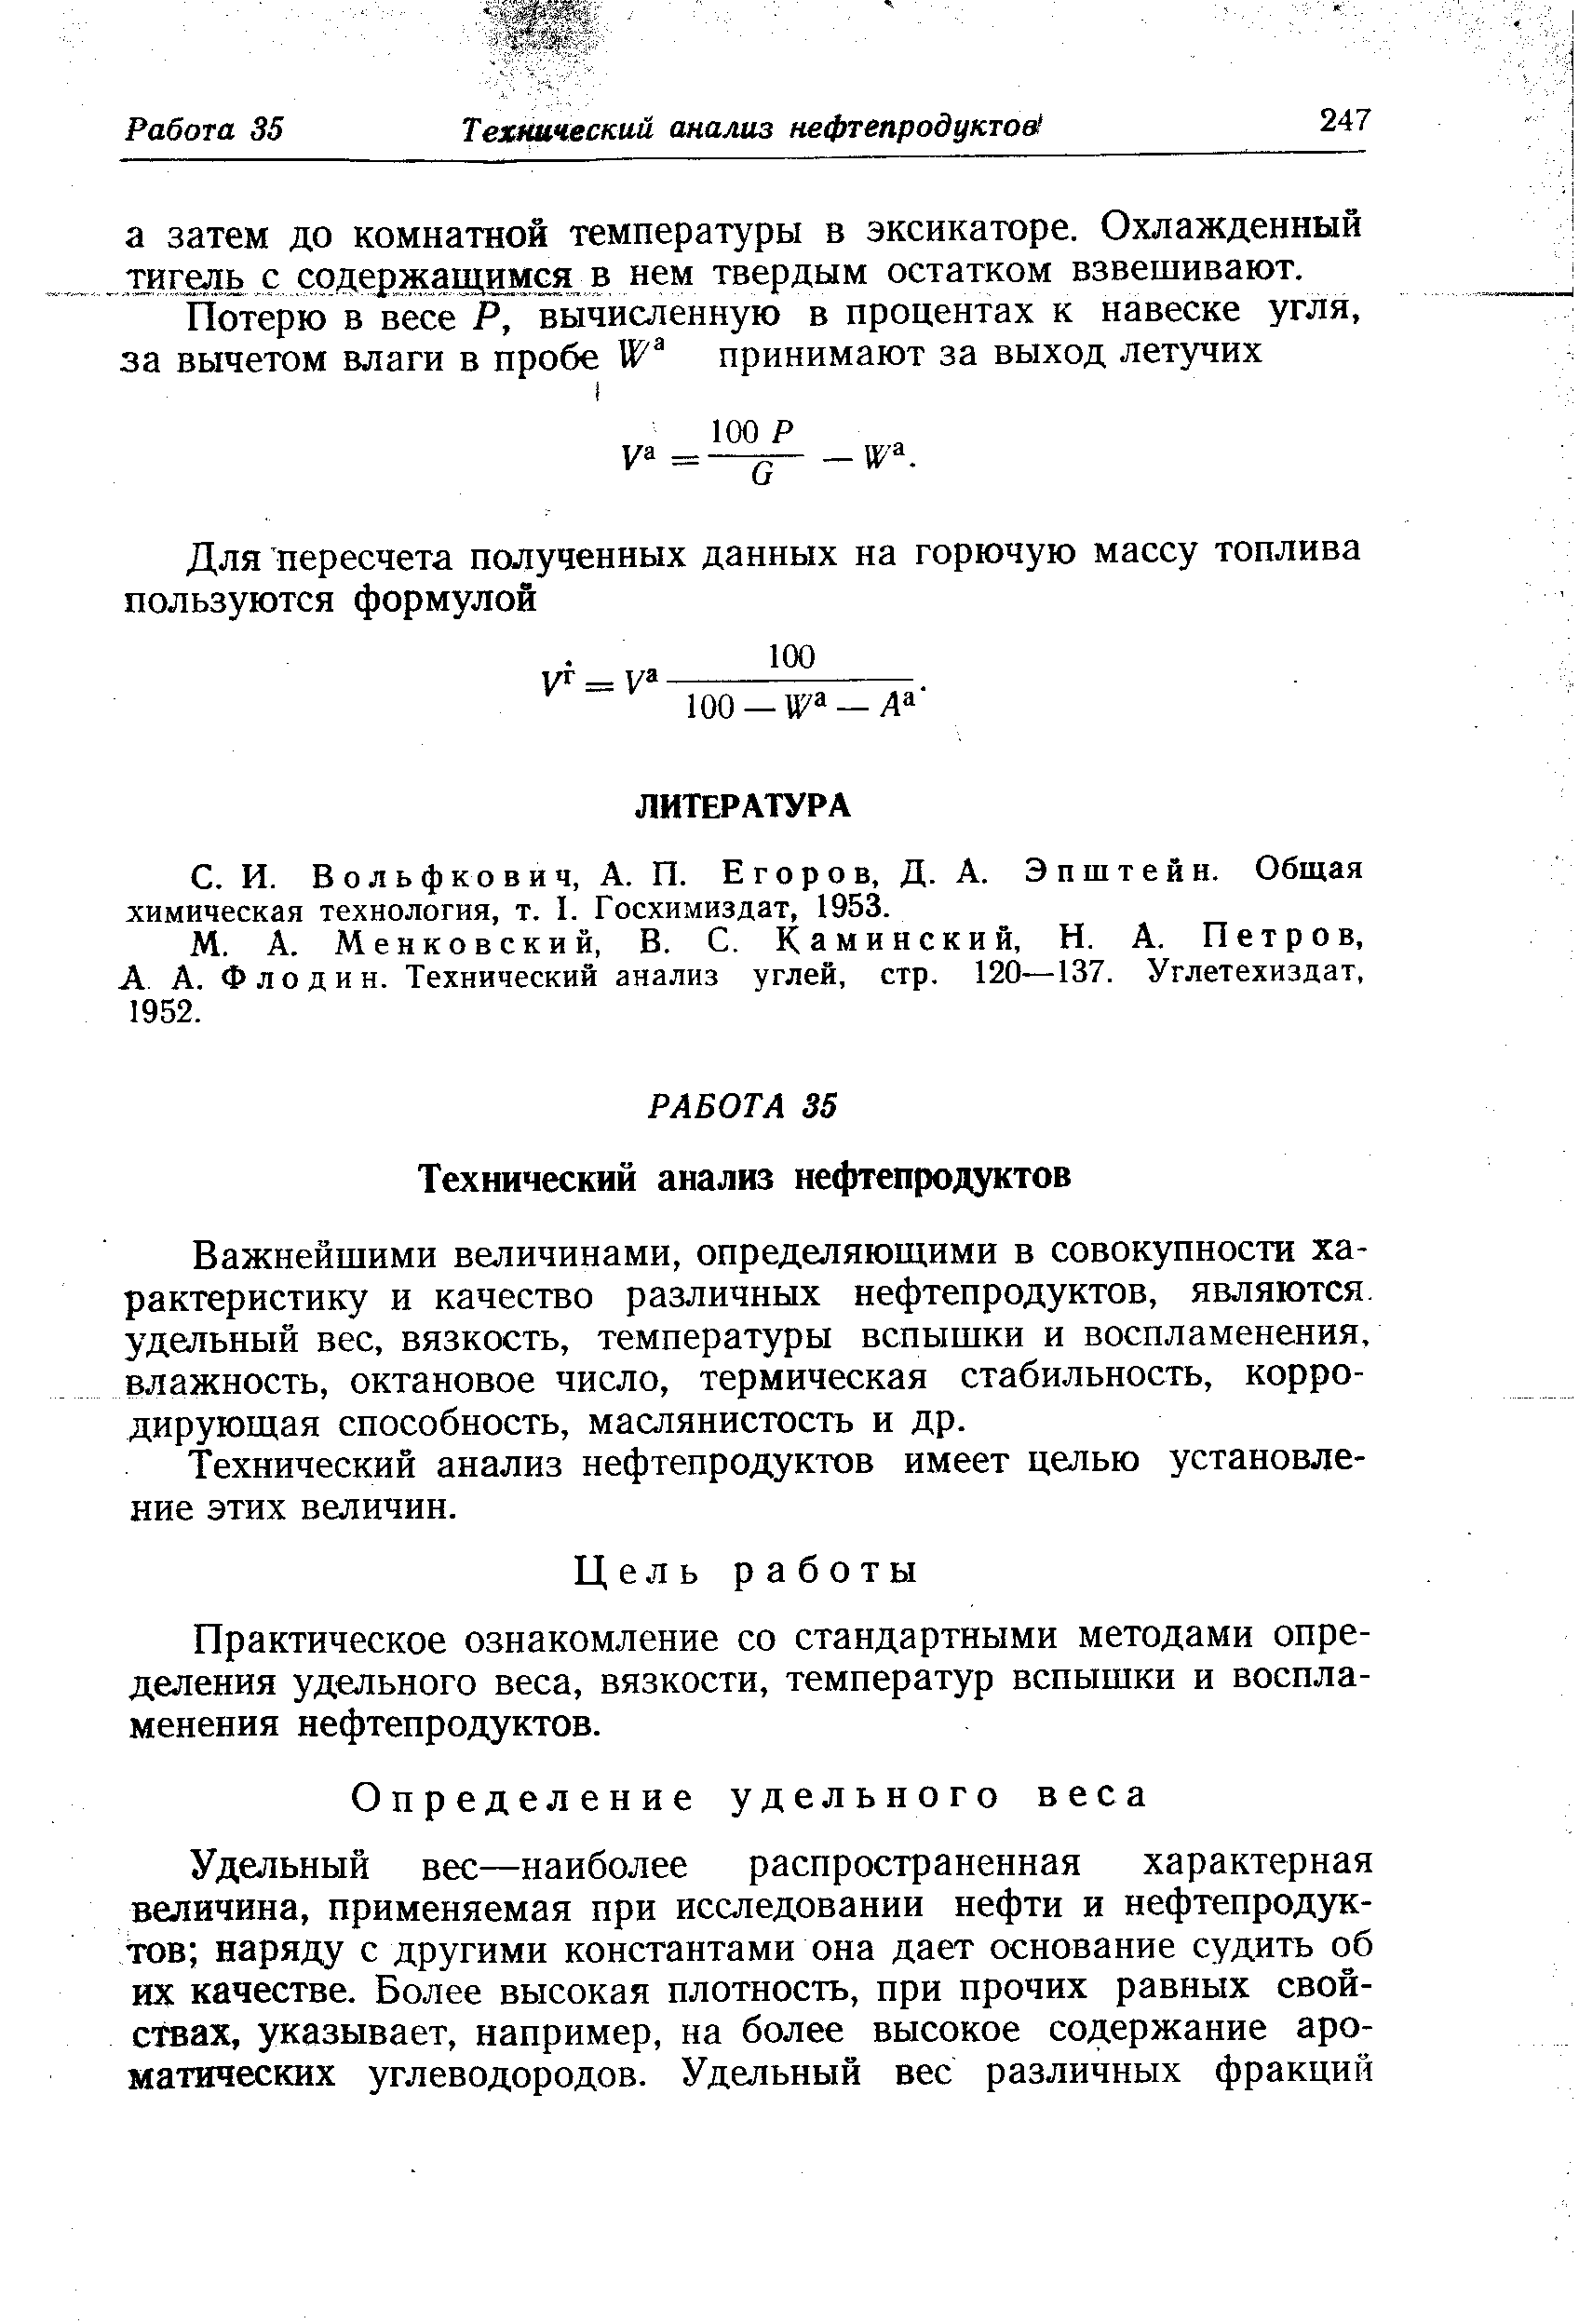 в о л ь ф ко в и ч, А. п. Егоров, Д. А. Эпштейн. Общая химическая технология, т. I. Госхимиздат, 1953.